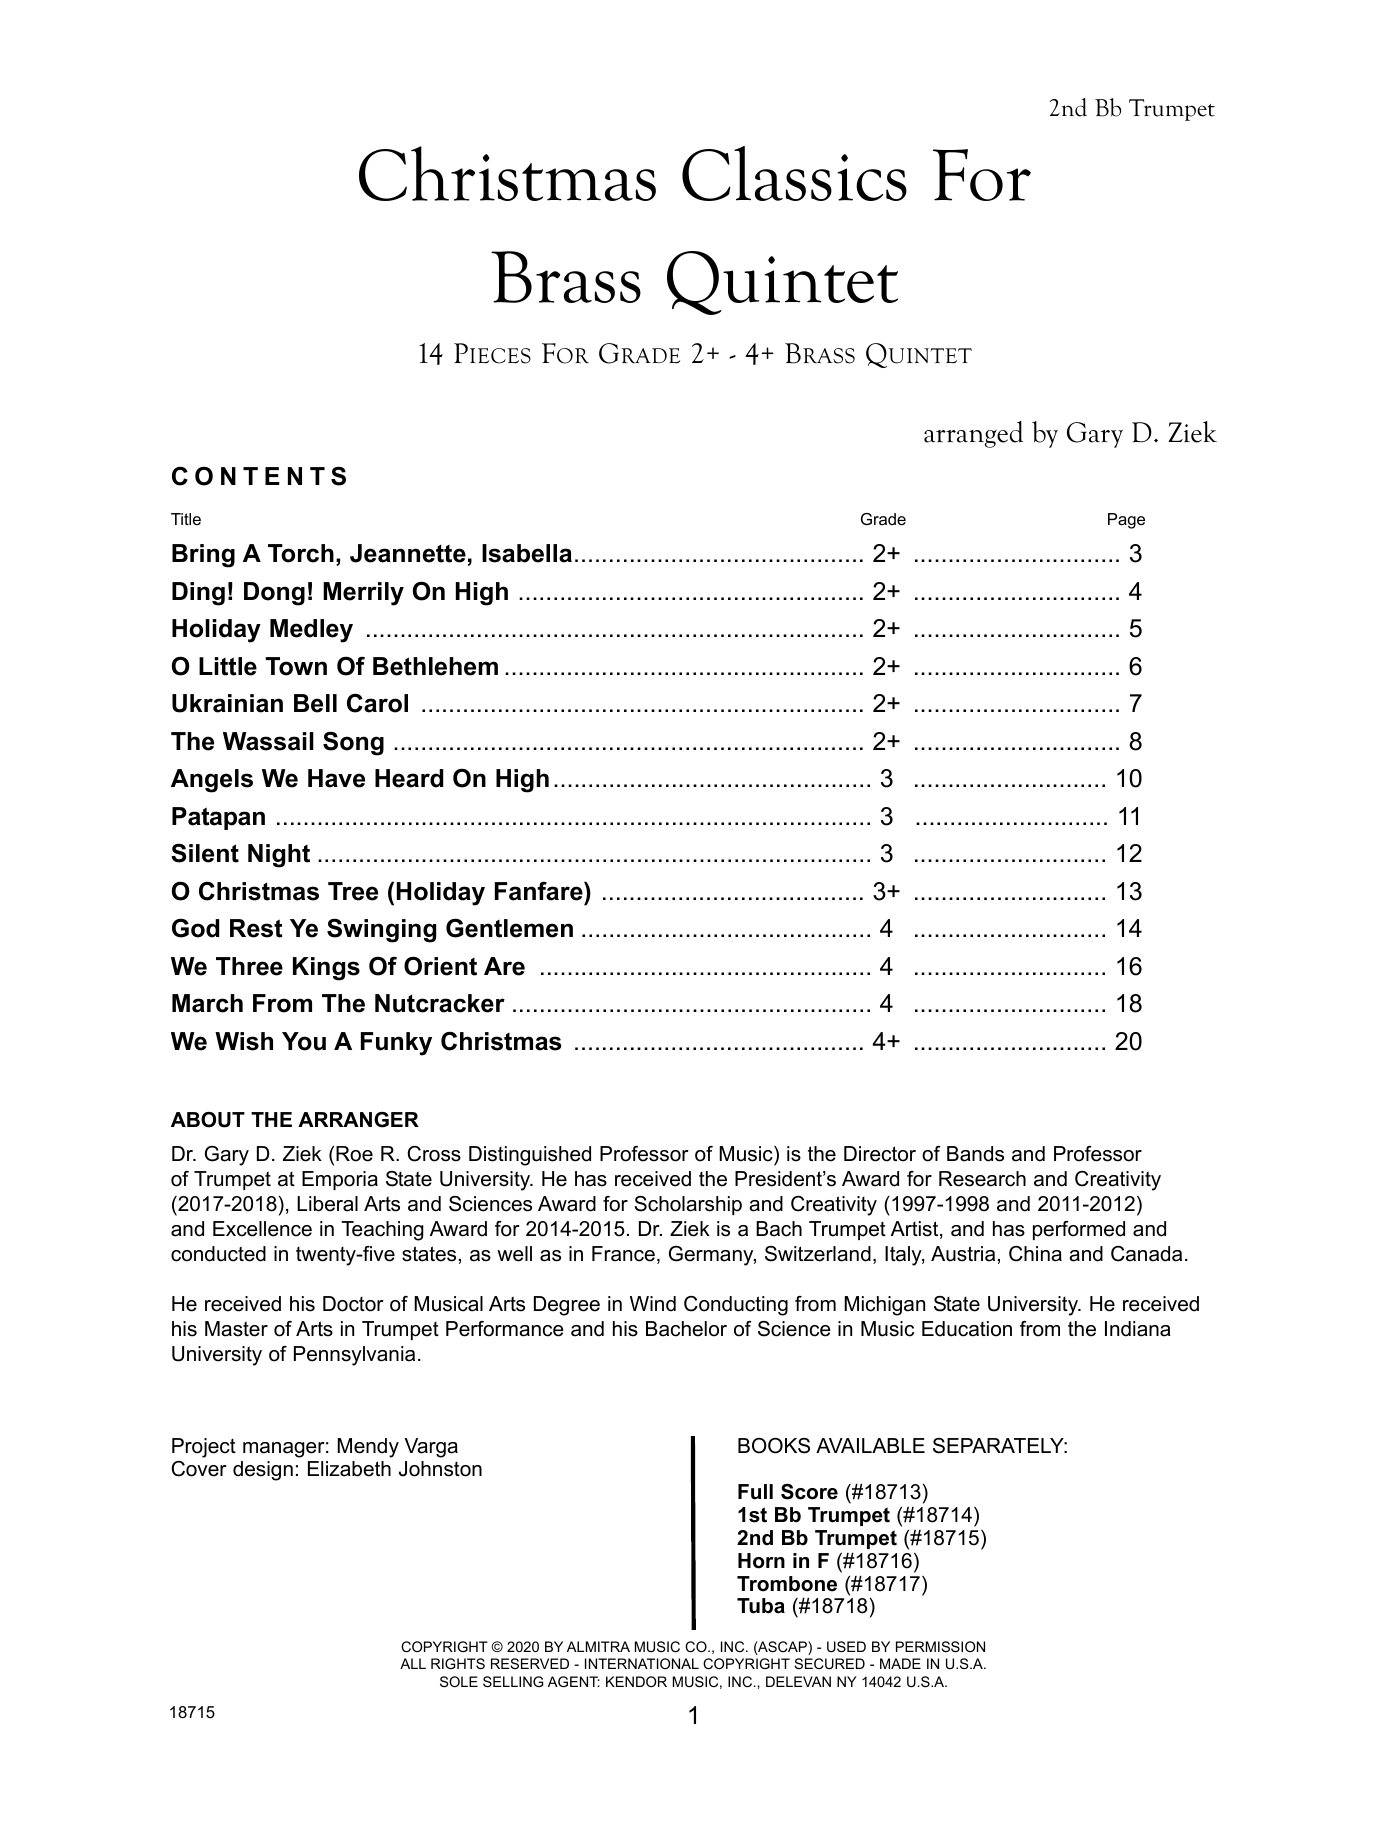 Download Gary Ziek Christmas Classics For Brass Quintet - Sheet Music